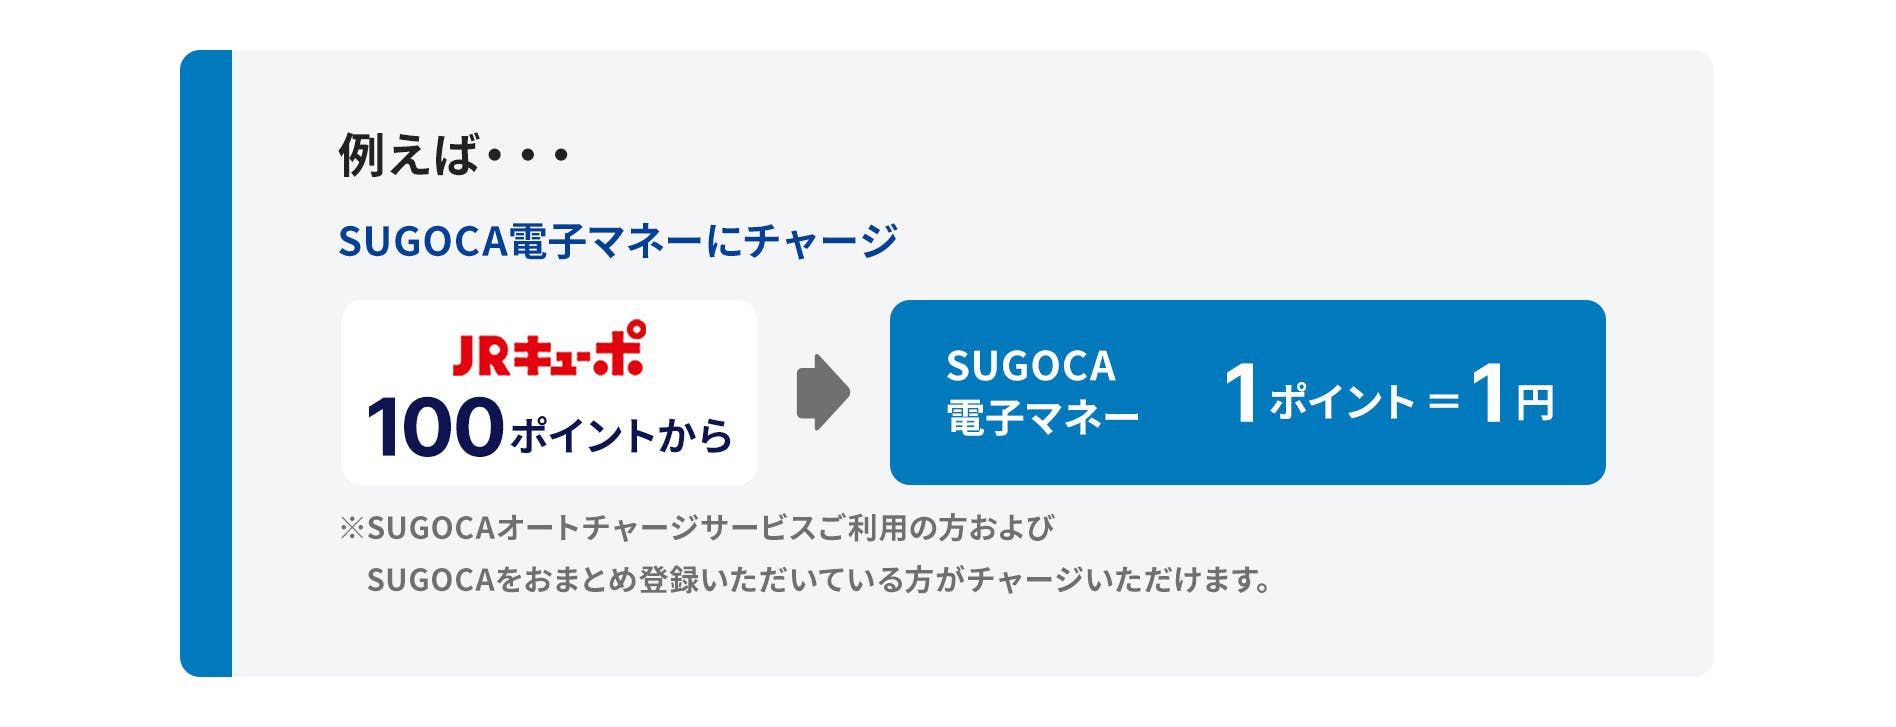 例えば…　SUGOCA電子マネーにチャージの場合、JRキューポ100ポイントからでSUGOCA電子マネー1ポイント＝1円※SUGOCAオートチャージサービスご利用の方のみ可能です。　「アミュプラザみやざきショッピングチケット」に交換する場合、JRキューポ500円分がアミュプラザみやざきショッピングチケット500円分※その他のアミュプラザでもご利用できるお買物券と交換できます。